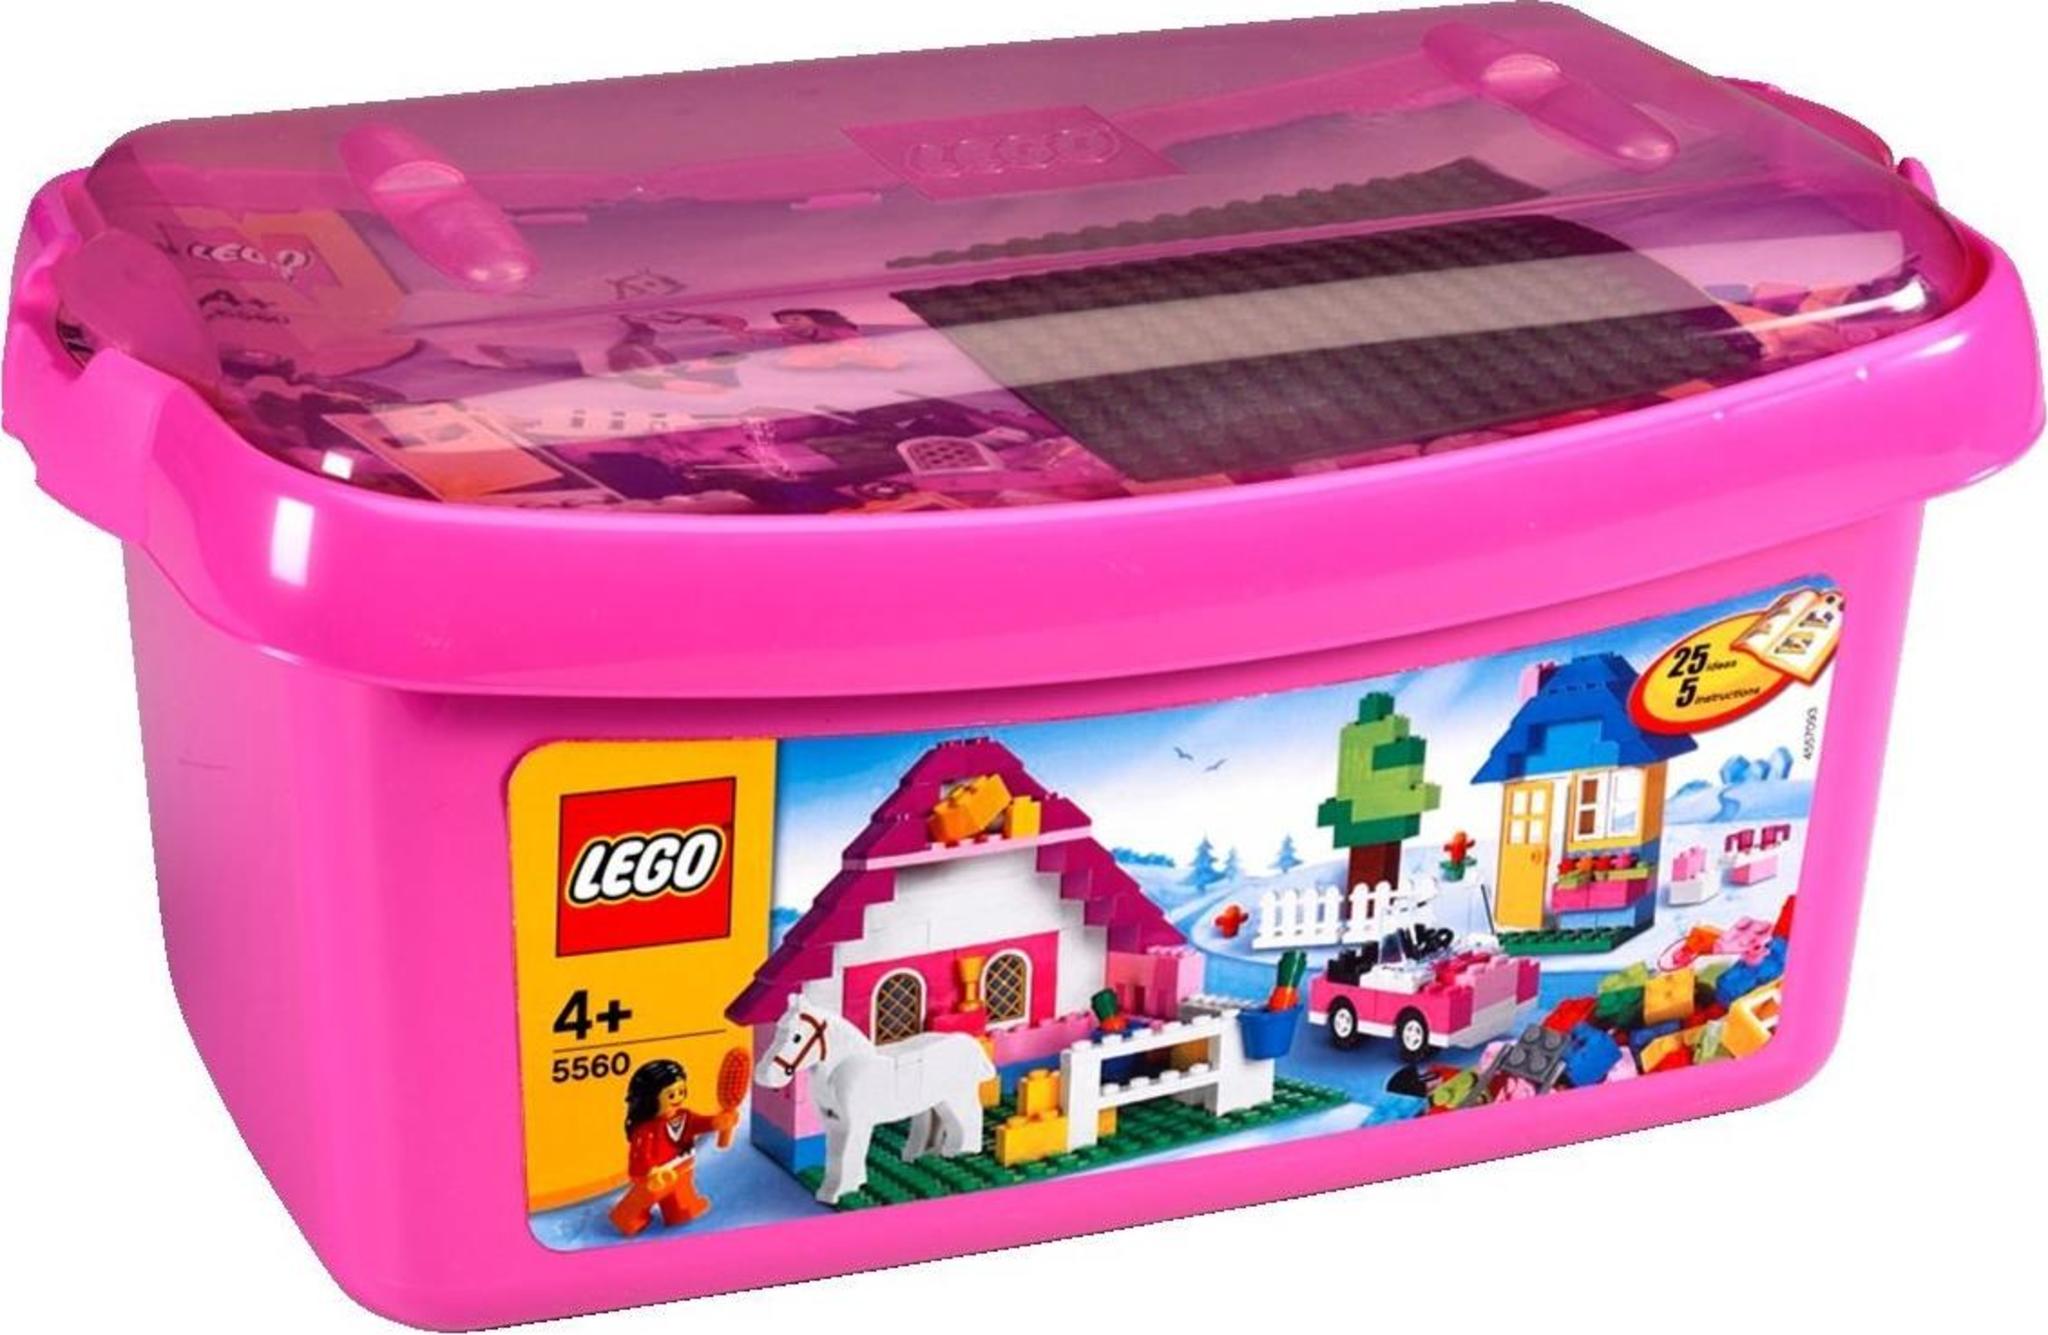 Contenitore Lego Storage Brick 8 Rosa, Cesti e Contenitori Multiuso